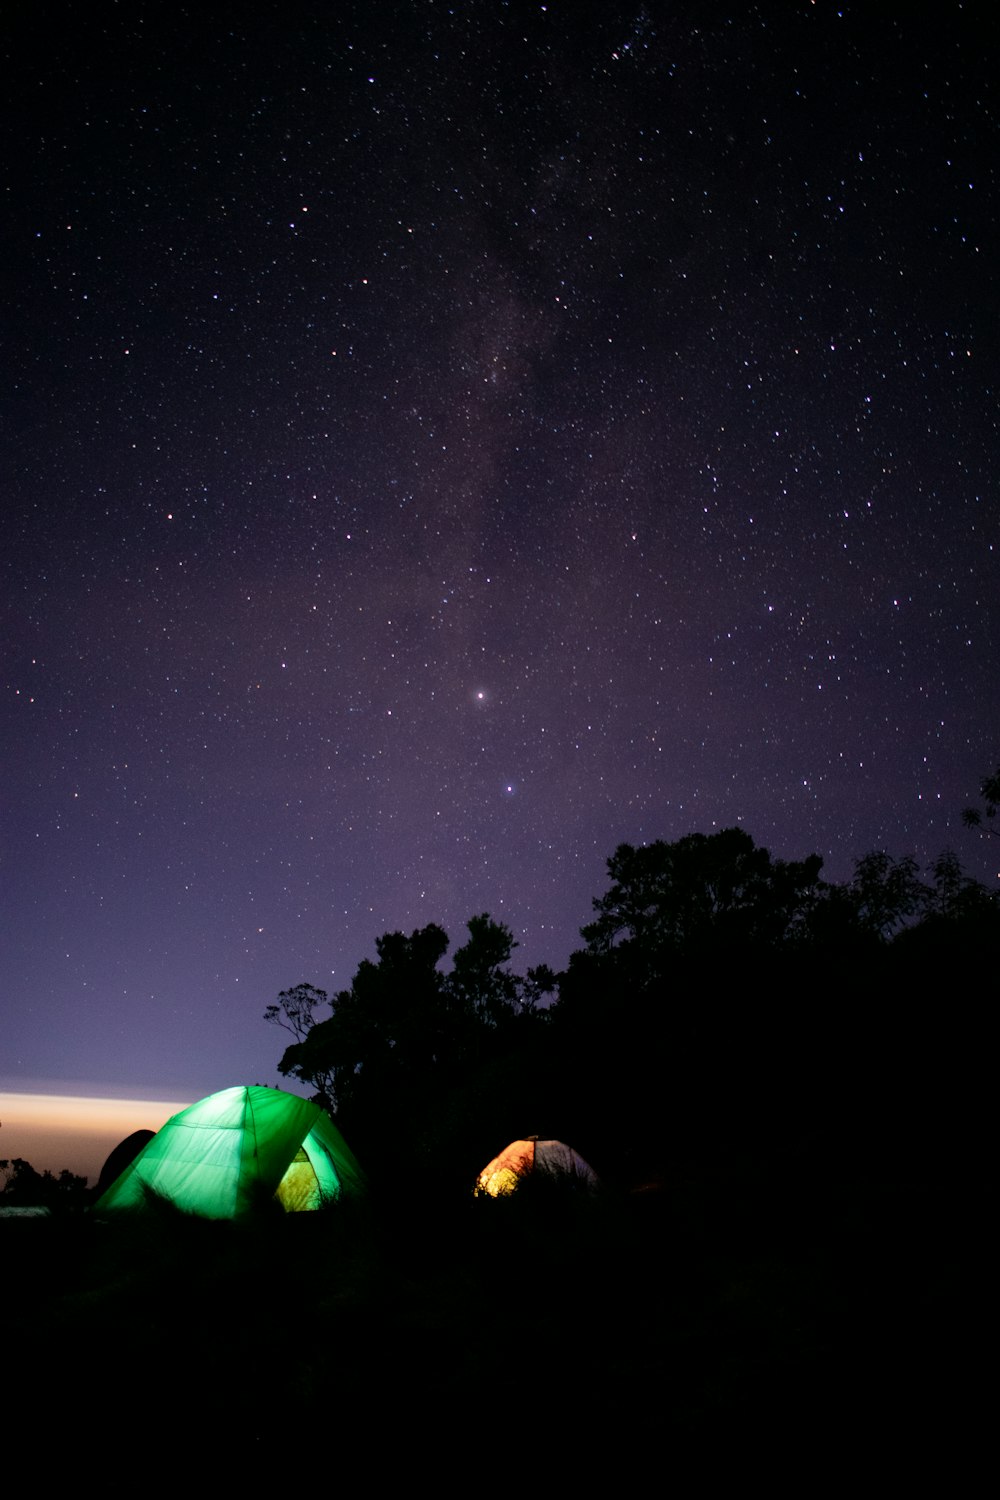 Un par de tiendas de campaña sentadas bajo un cielo nocturno lleno de estrellas